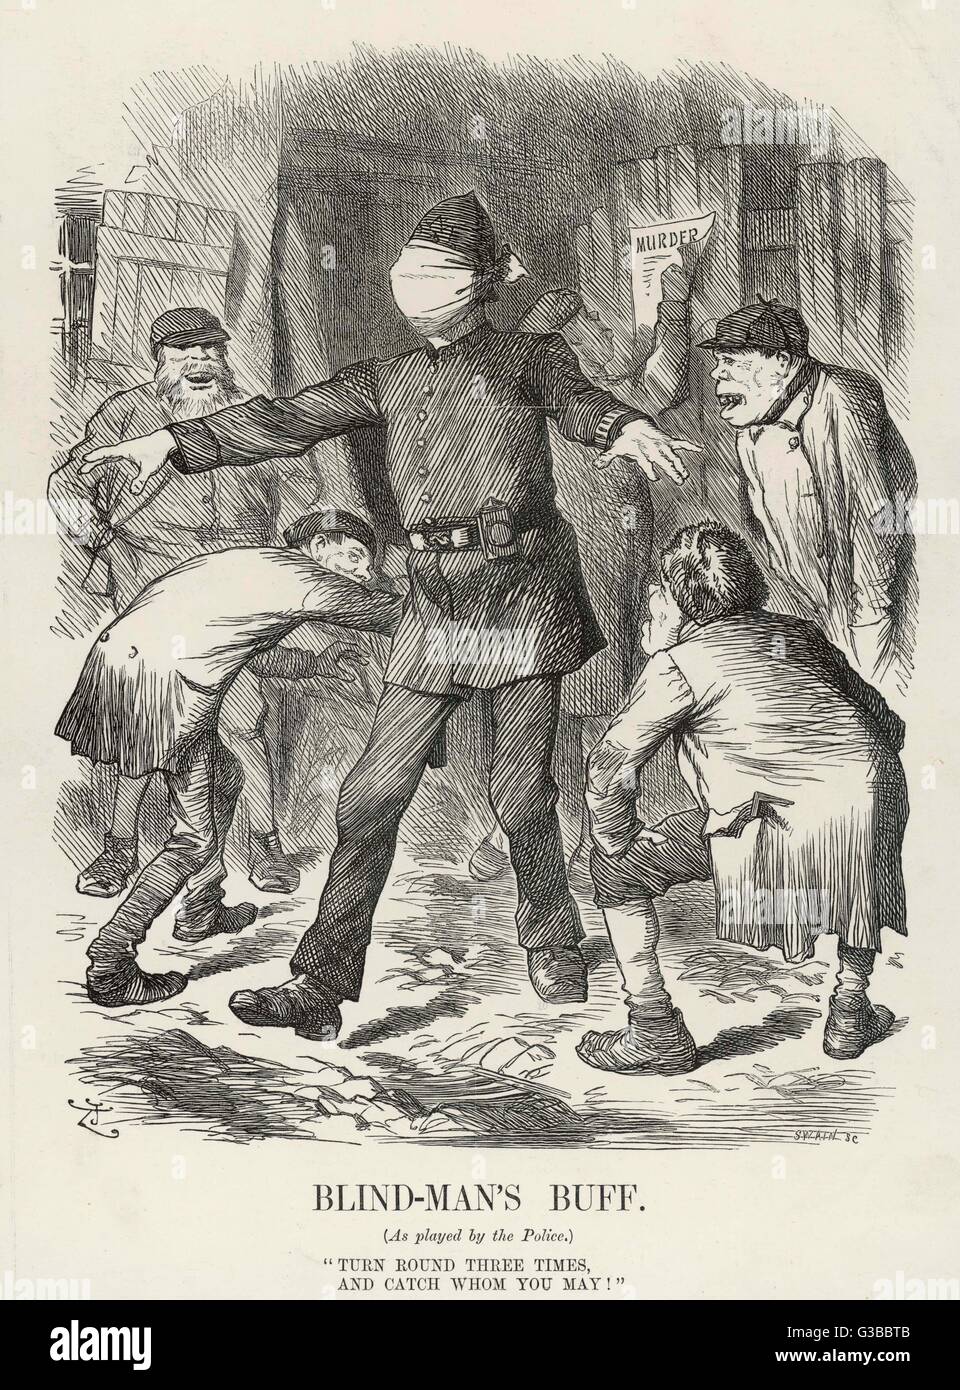 La satira notando l' incompetenza della polizia con riferimento al Jack the Ripper inchiesta assassinio. Cieco il buff - girare 3 volte e le catture che si può. Data: 1888 Foto Stock